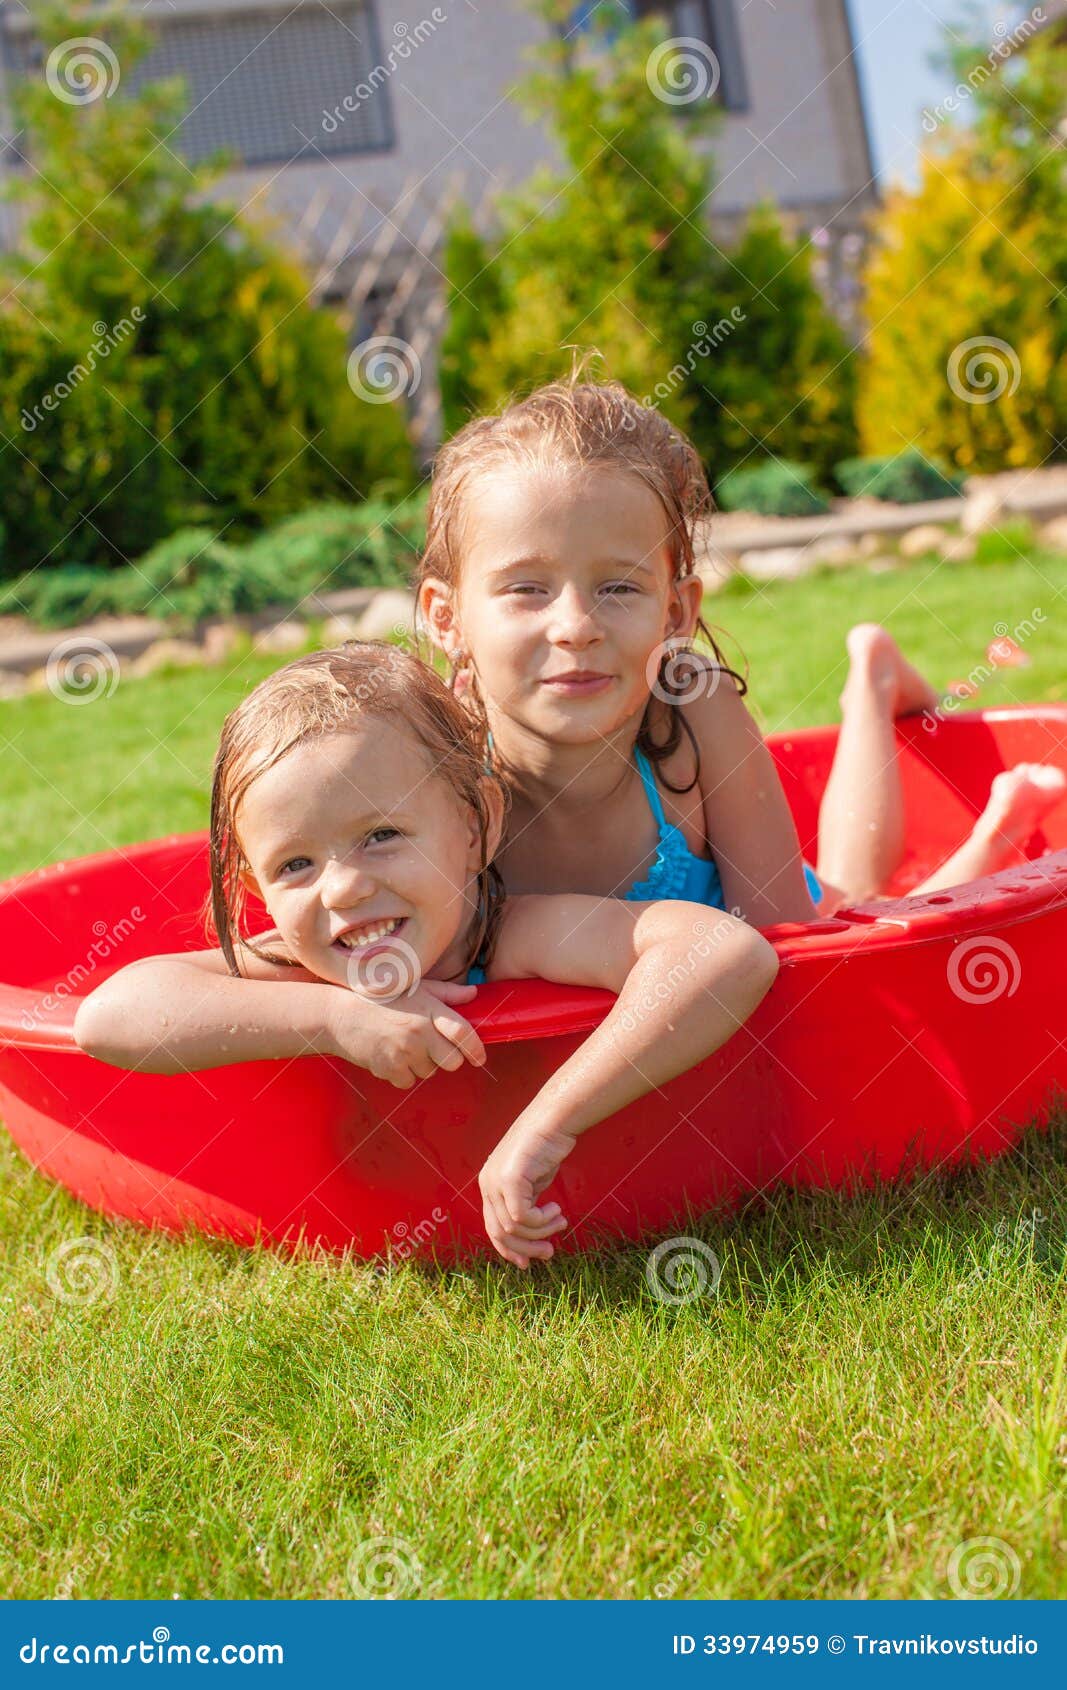 Two Cute Little Happy Girls Having Fun In